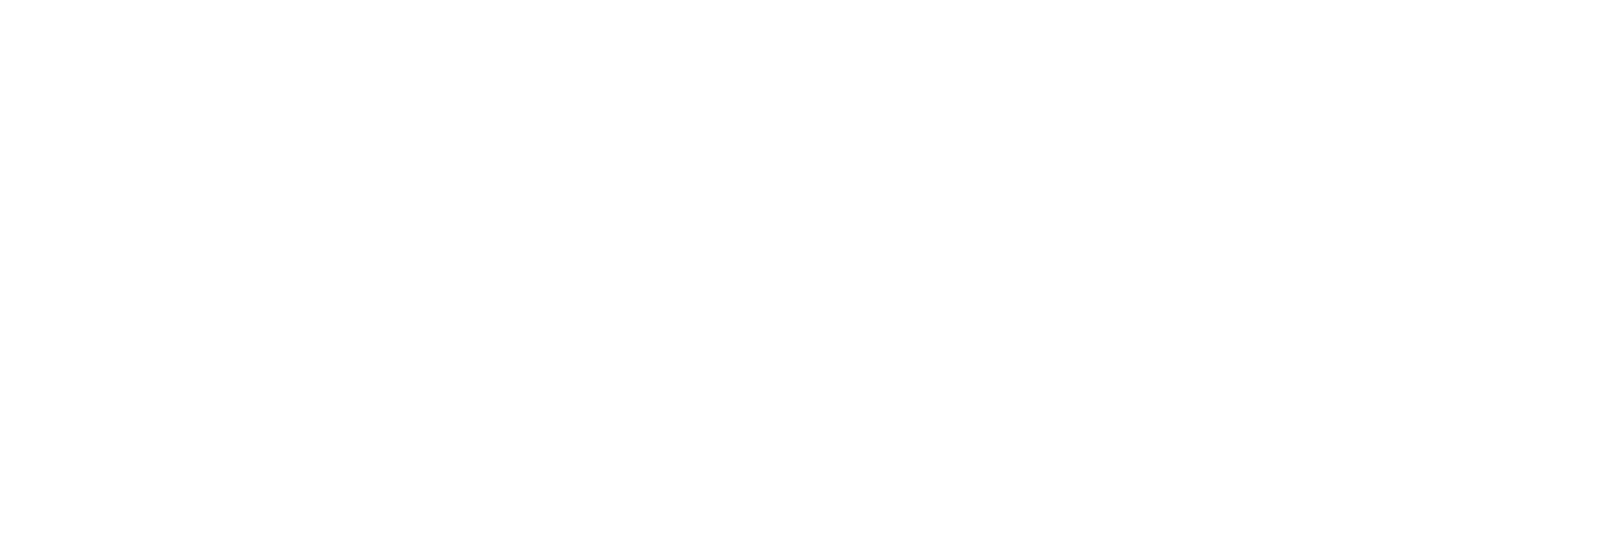 Makowska&Kucharski Dent